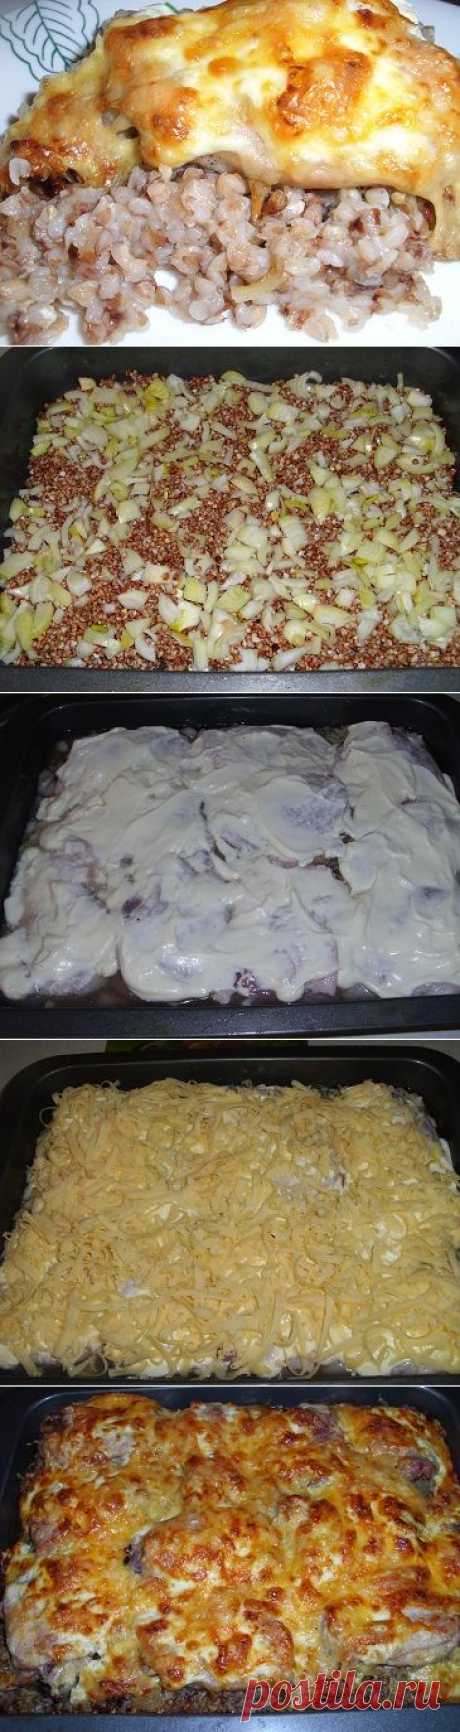 Курица с гречкой, запеченная в духовке под сырной корочкой